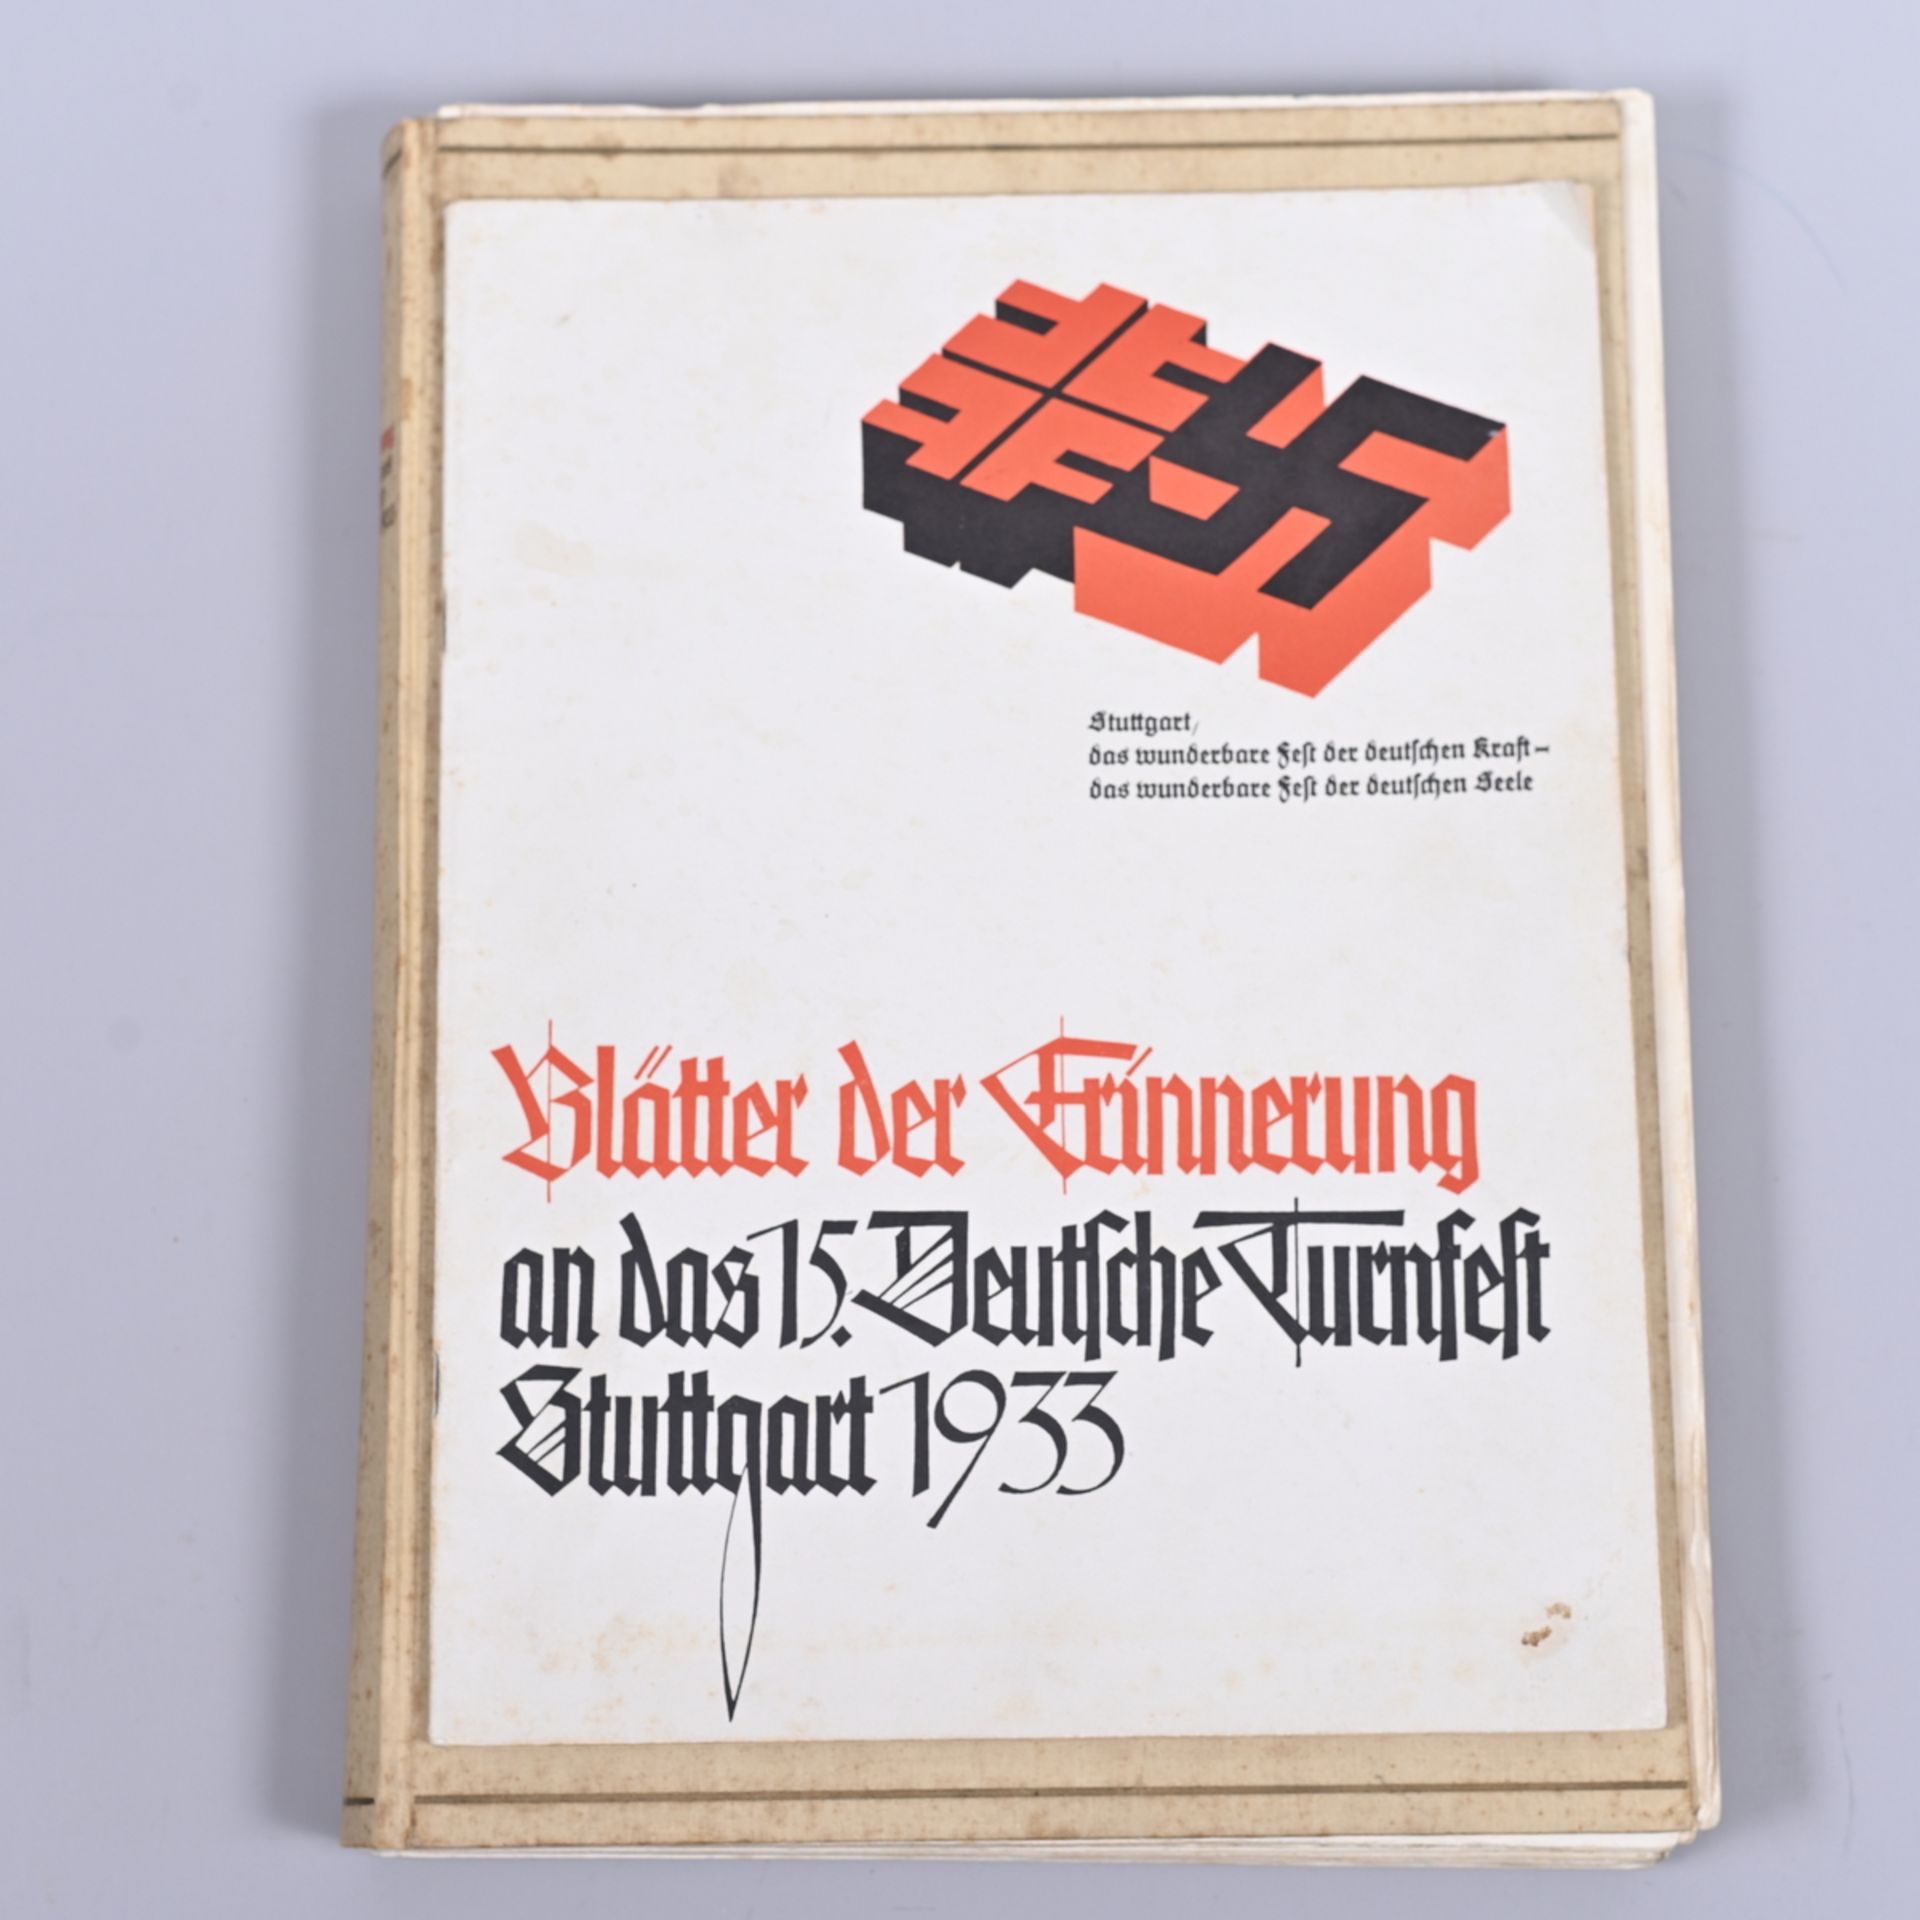 Festzeitung zum 15. Deutschen Turnfest, Stuttgart 1933, mit Beiheft "Blätter der Erinnerung", 14 - Image 2 of 2